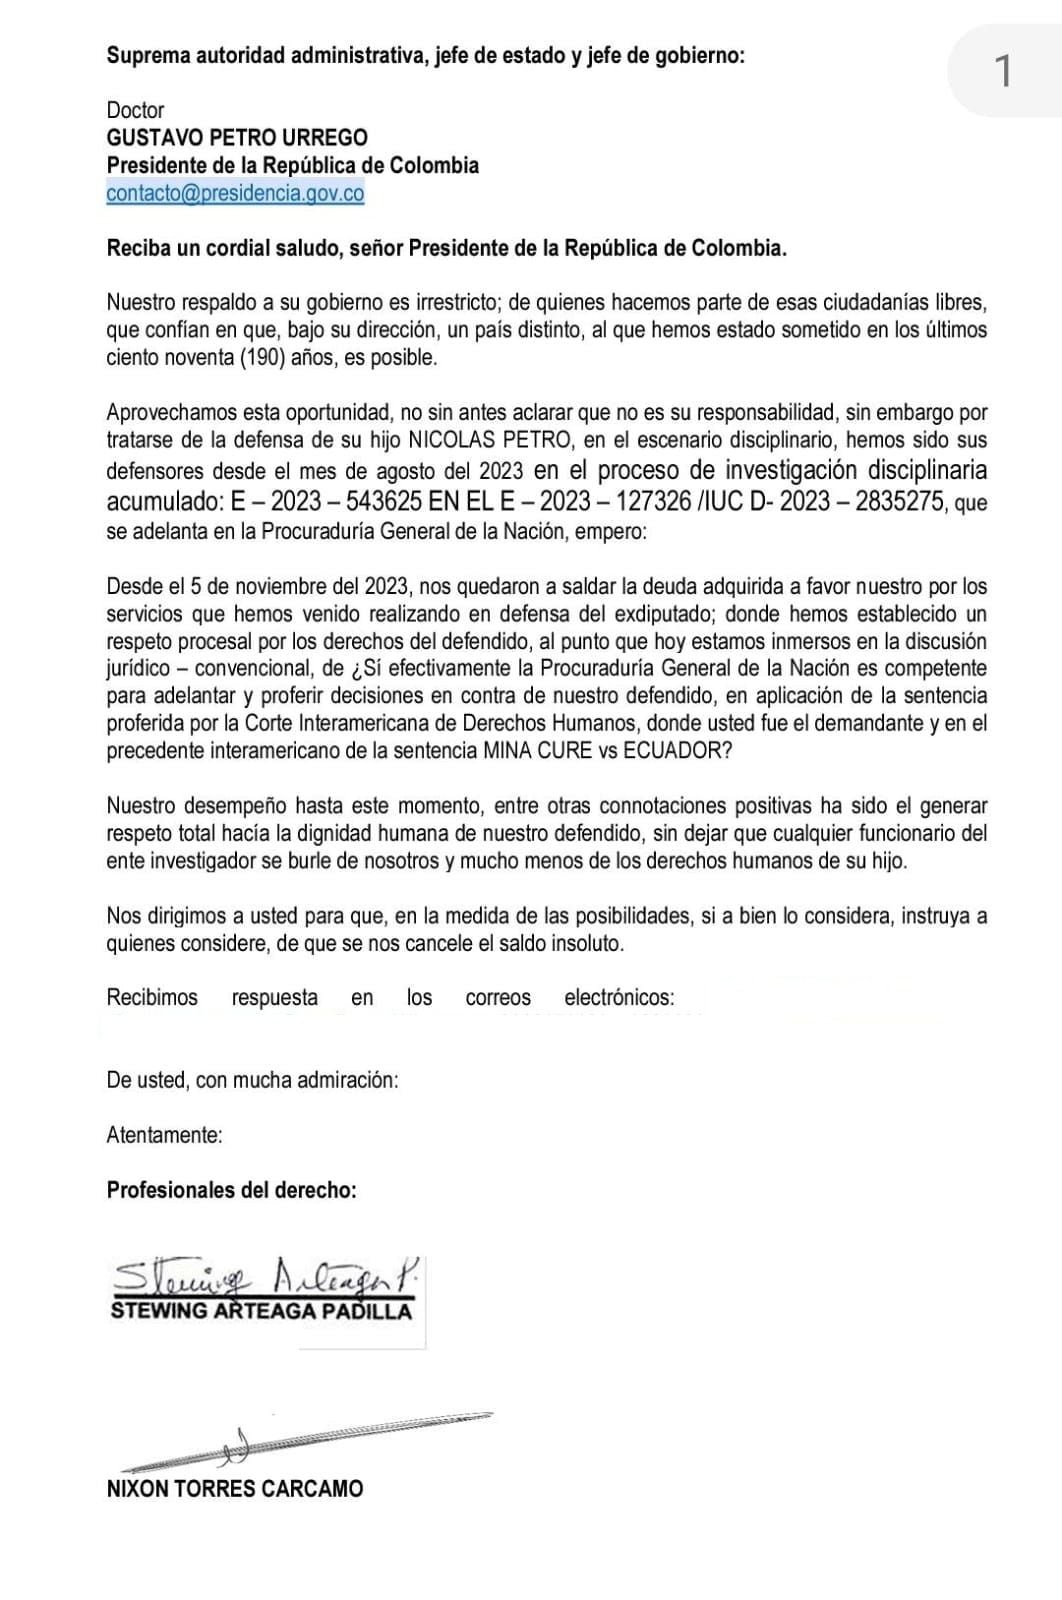 Carta que enviaron a Gustavo Petro cobrándole servicios de abogado a Nicolás Petro